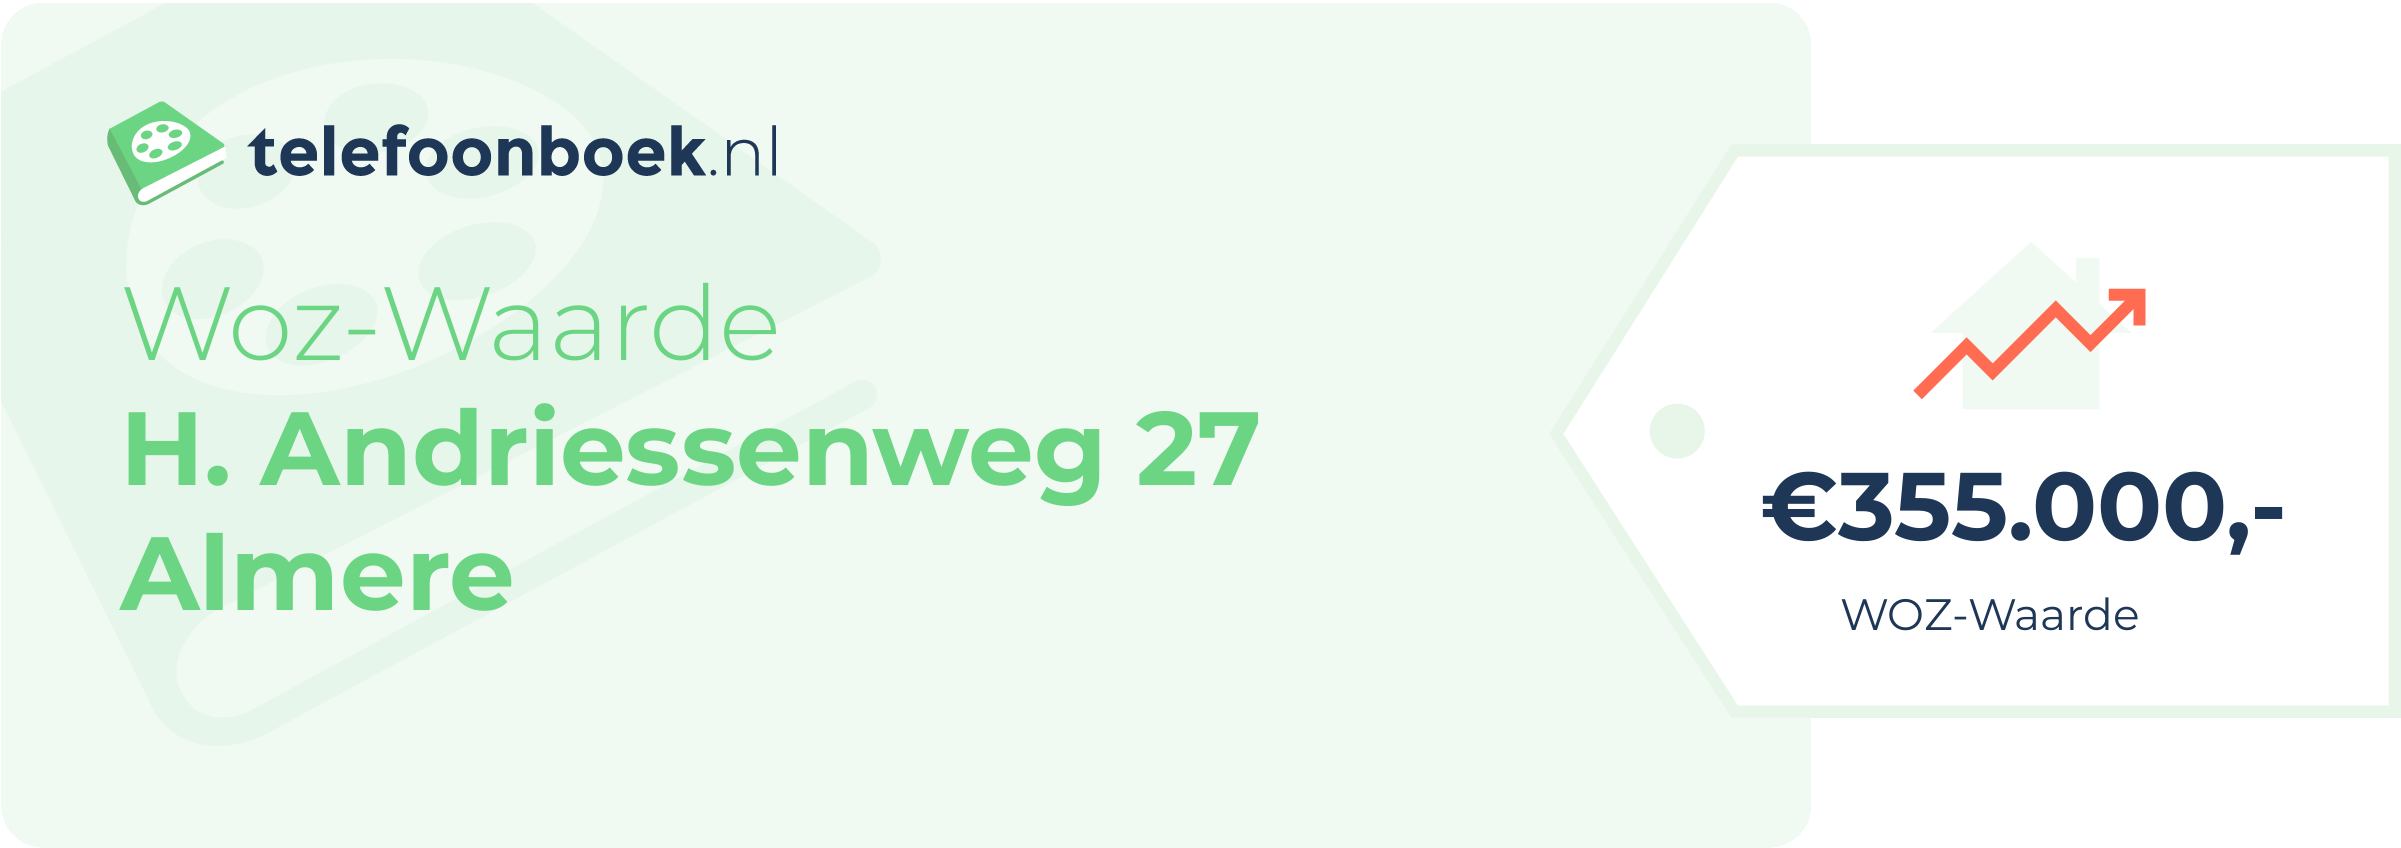 WOZ-waarde H. Andriessenweg 27 Almere